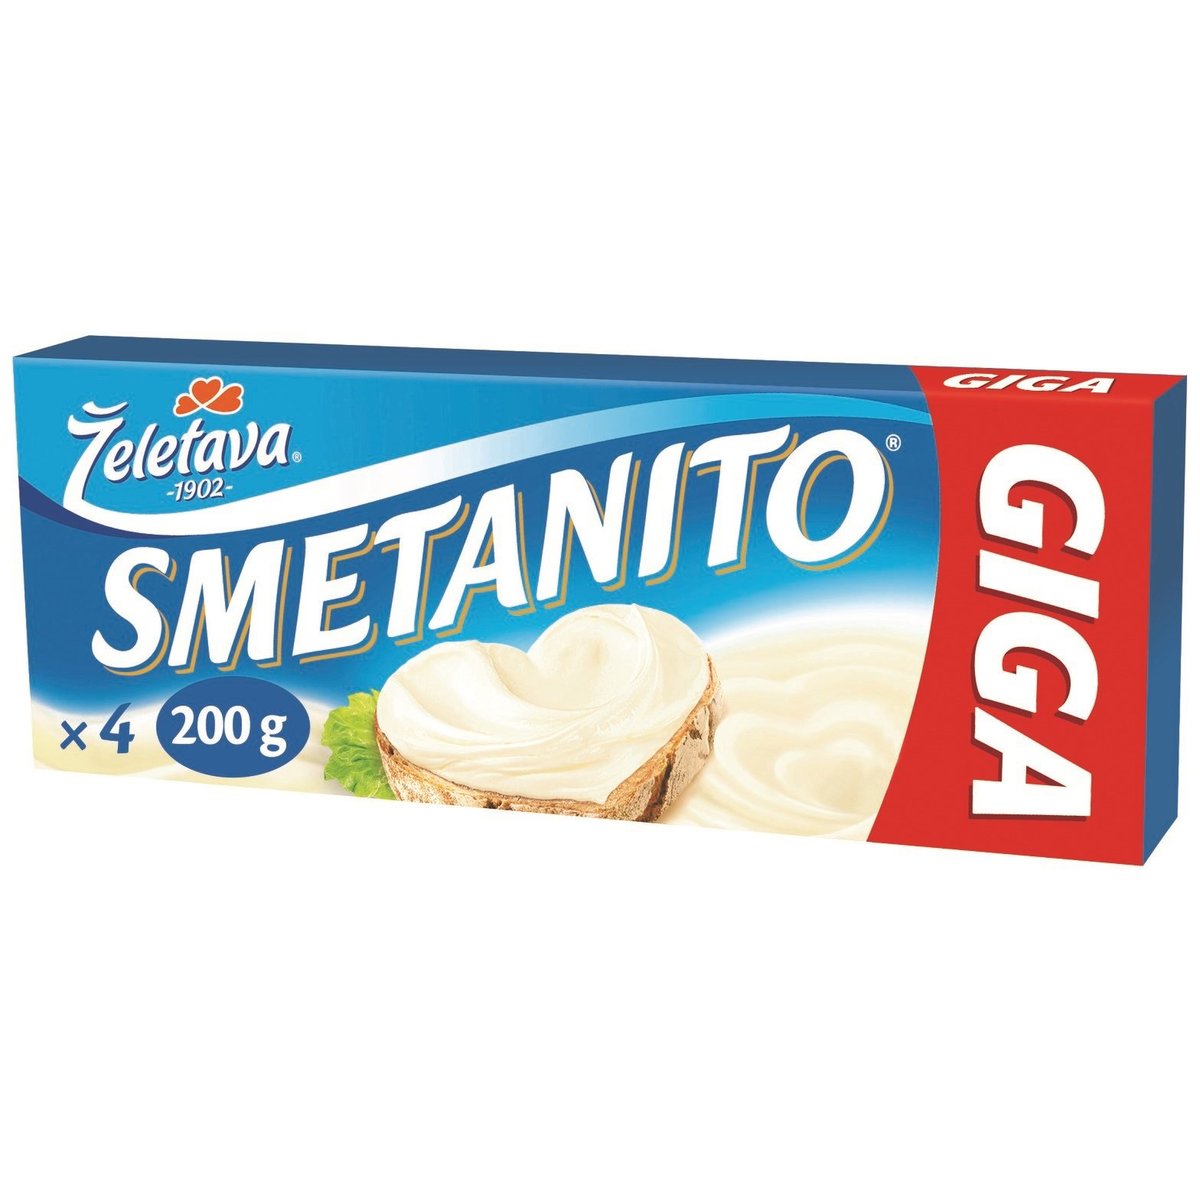 Smetanito Smetanové giga tavený sýr